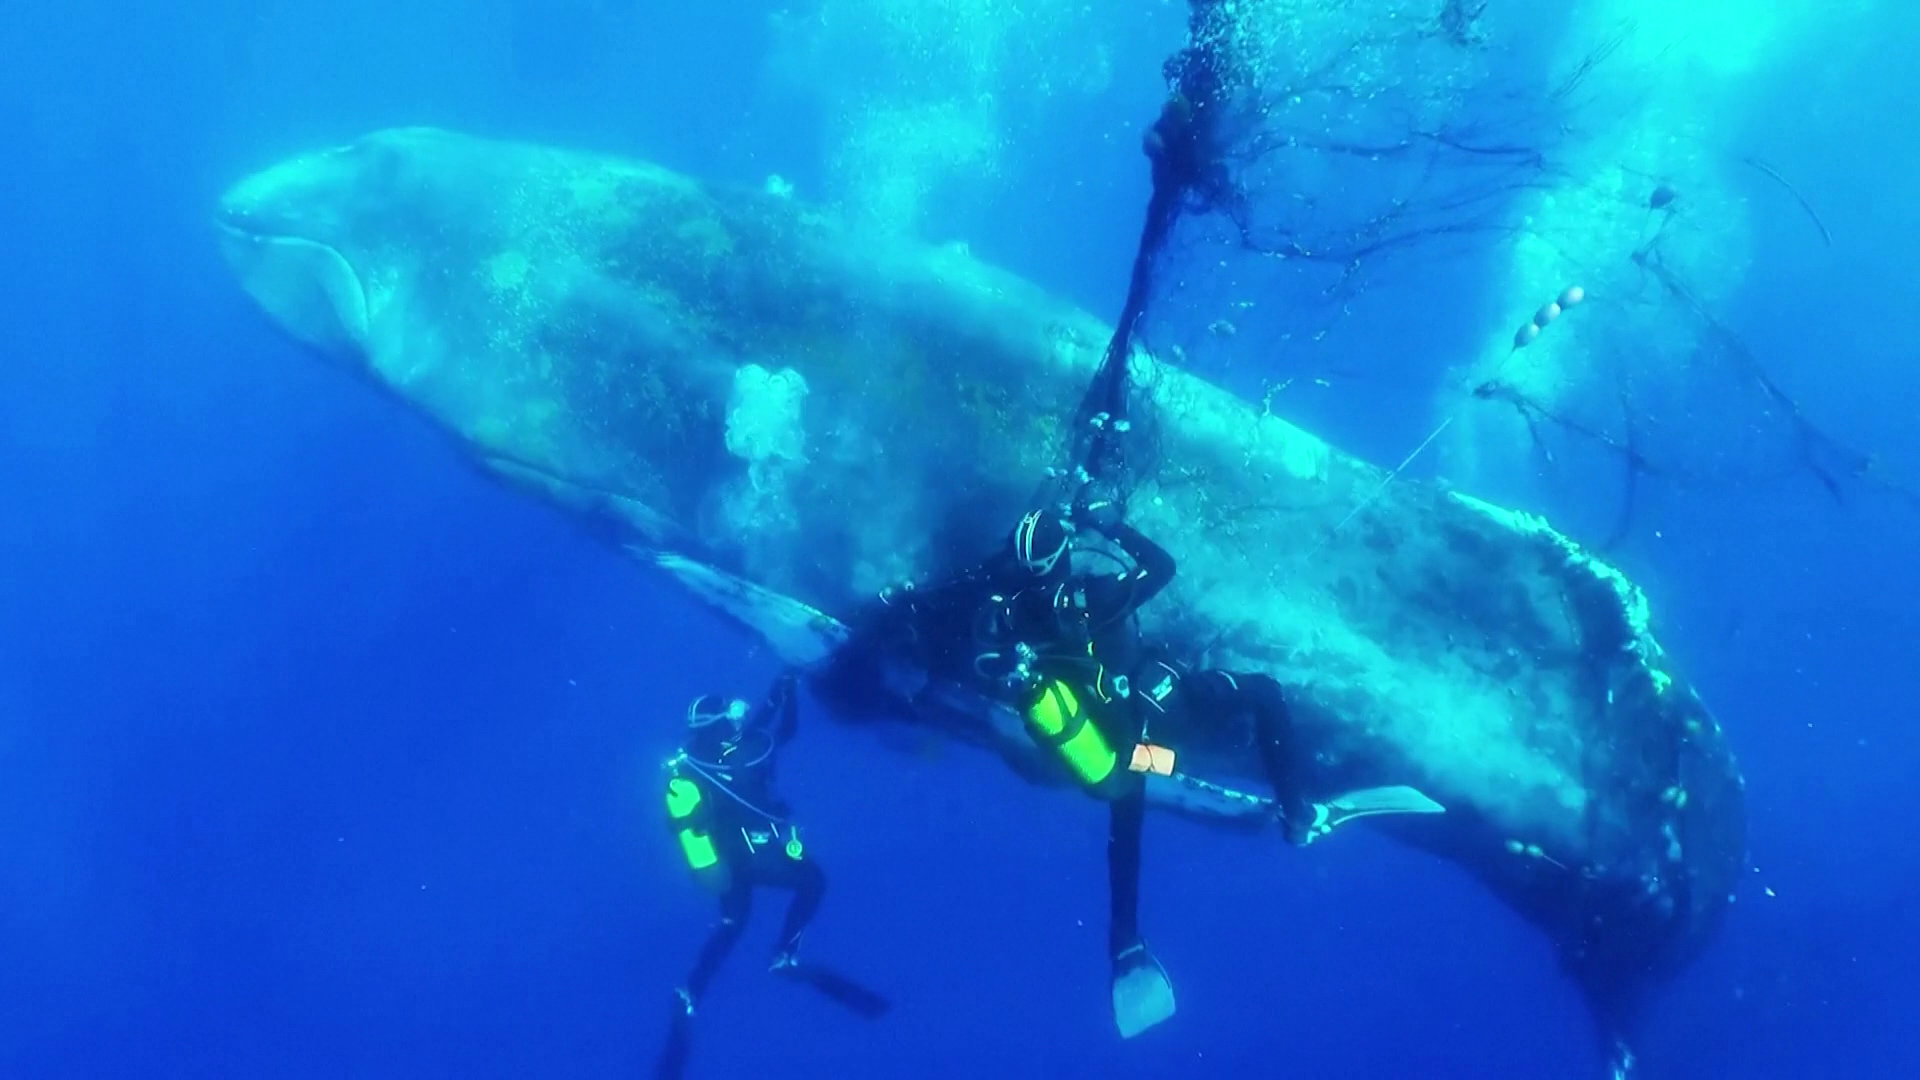 Hálóba gabalyodott bálnát mentettek spanyol búvárok